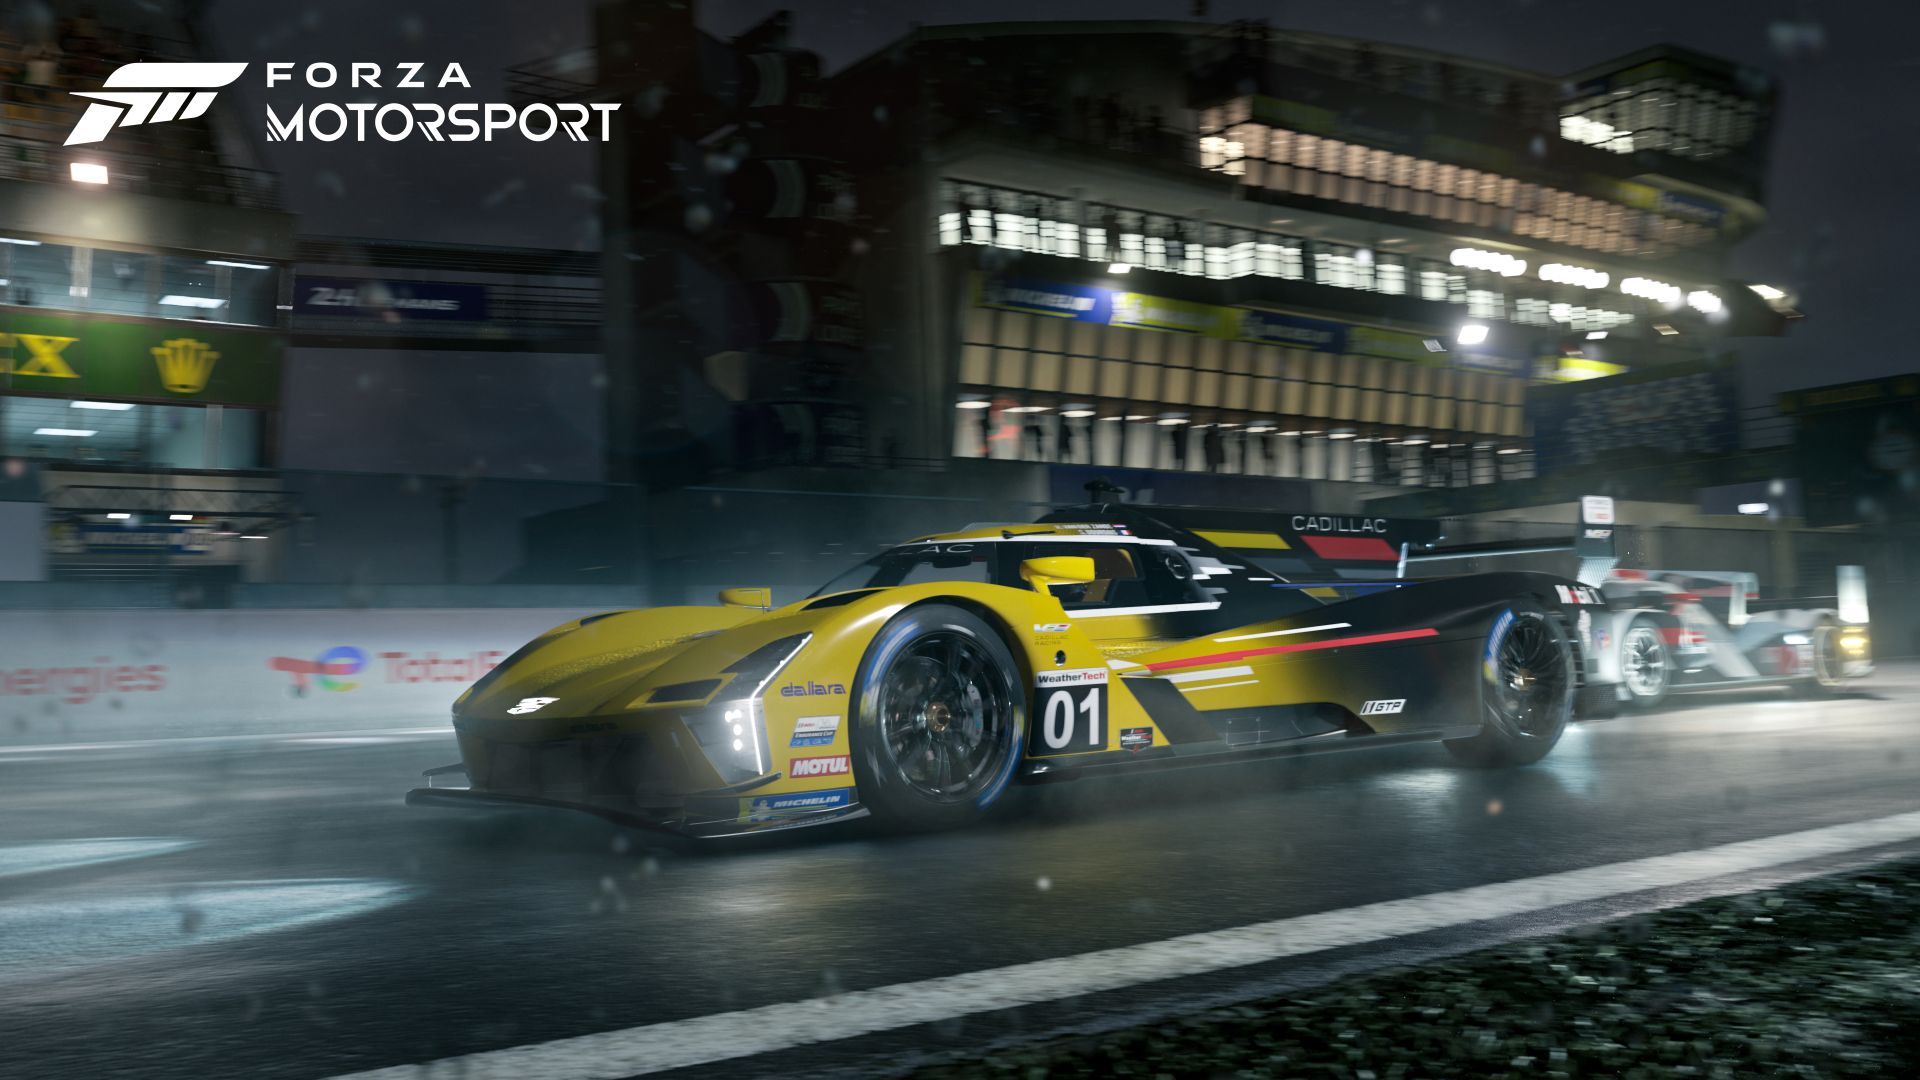 Геймеры призывают отменять предварительный заказ на Forza Motorsport – в чем причина